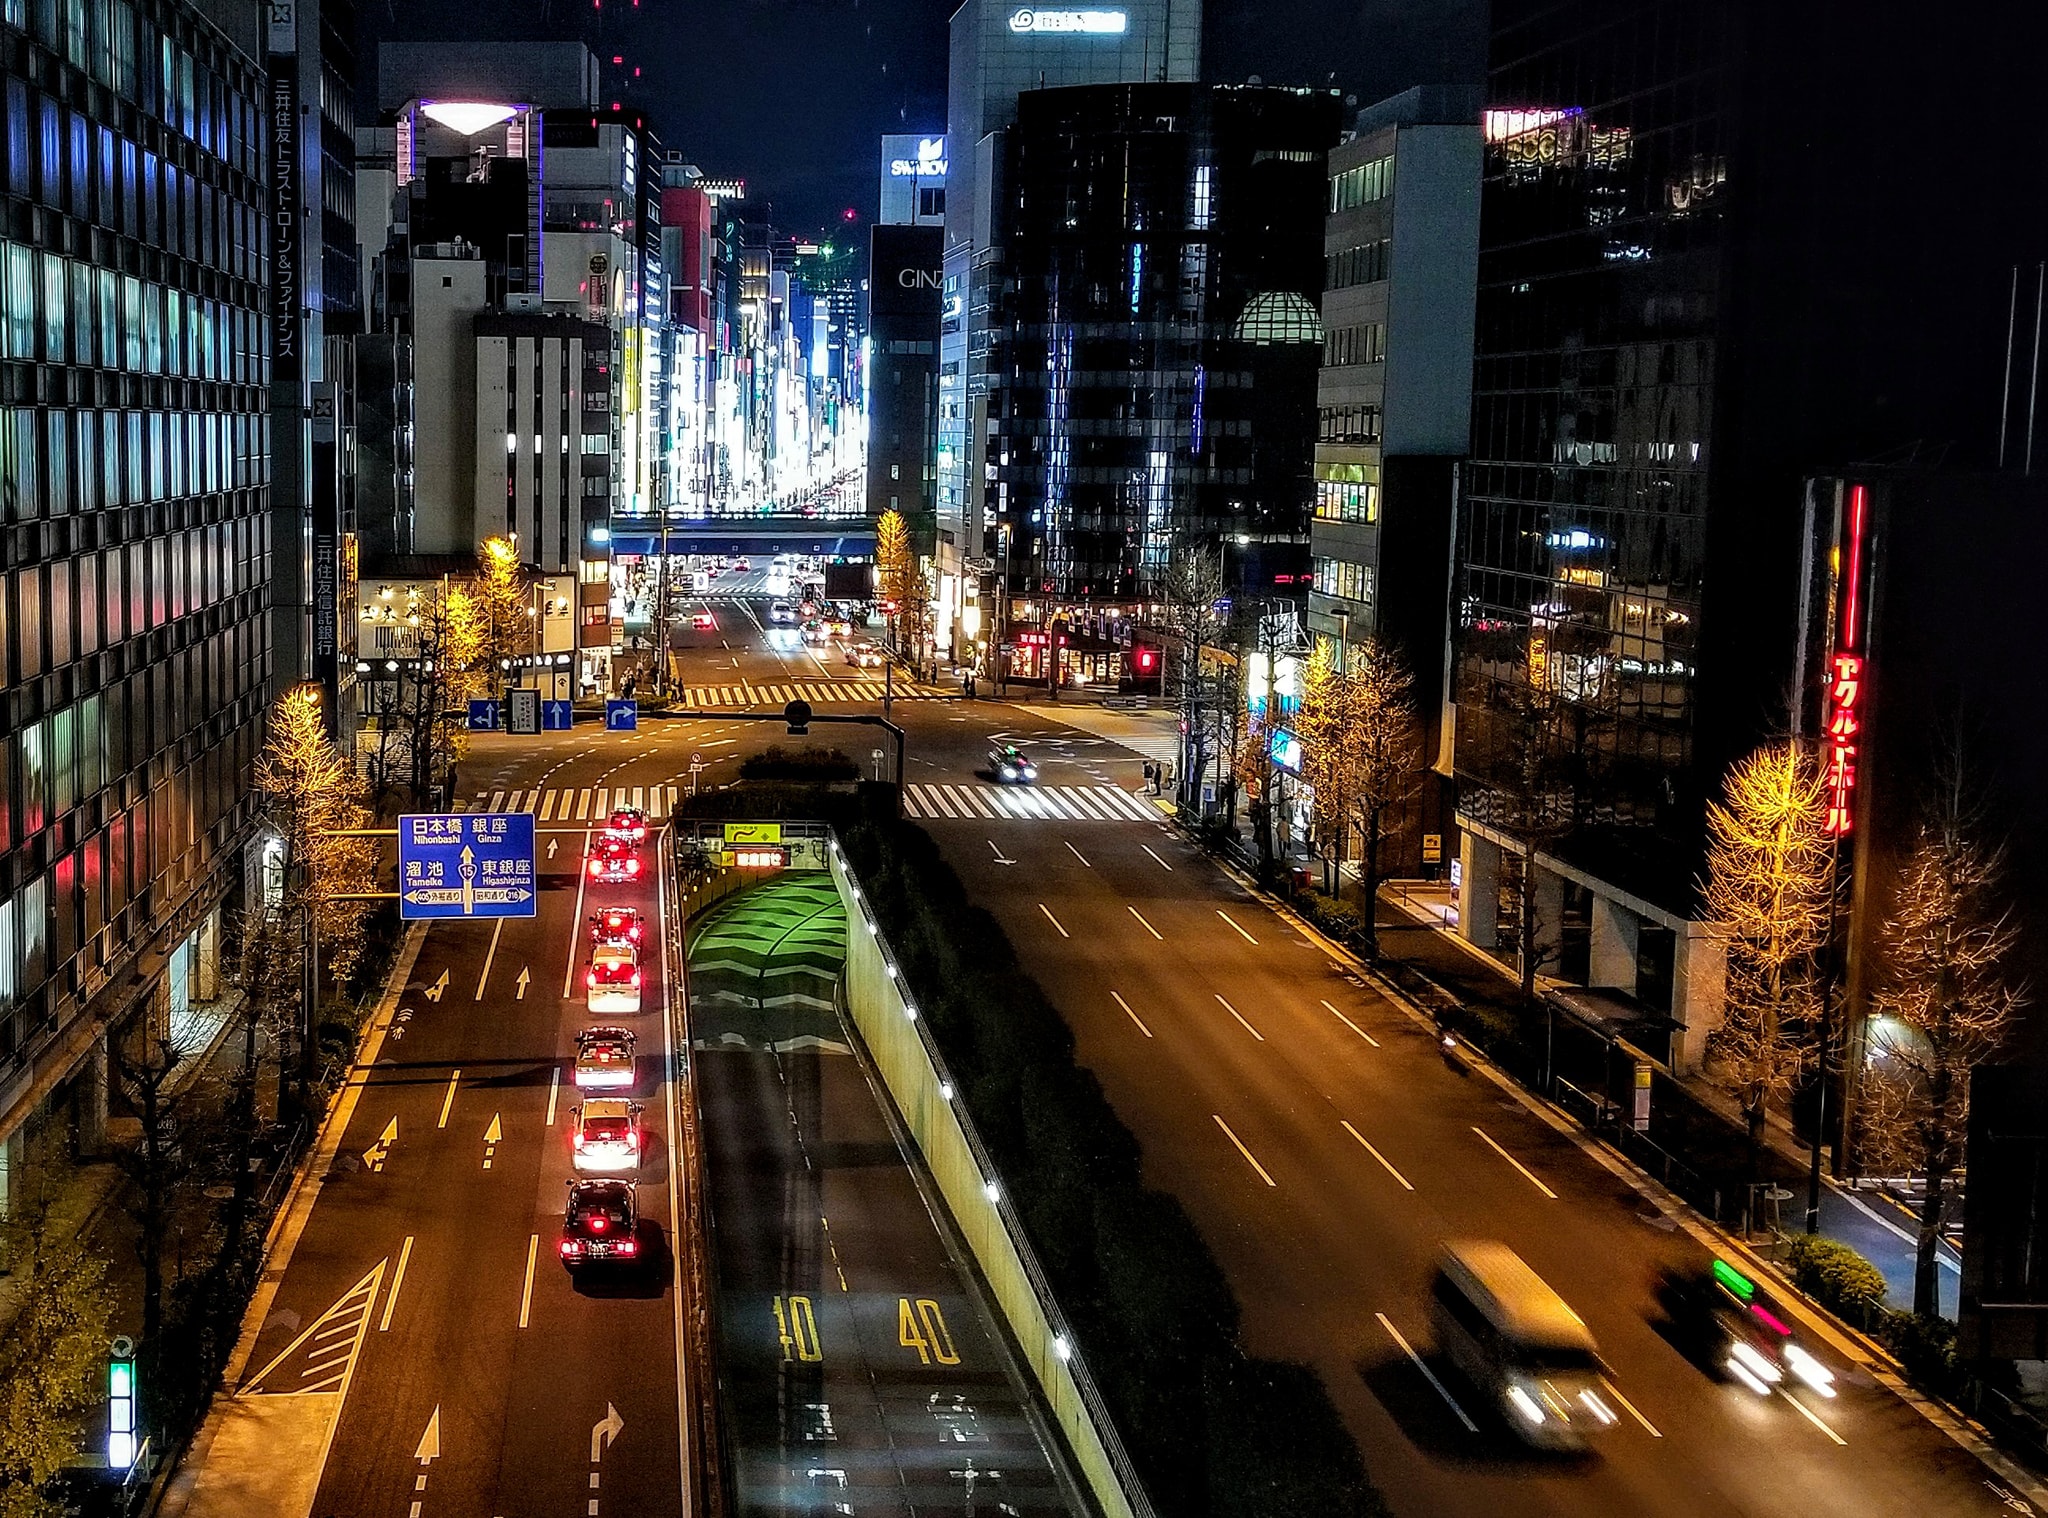 Night on the Tokyo Street